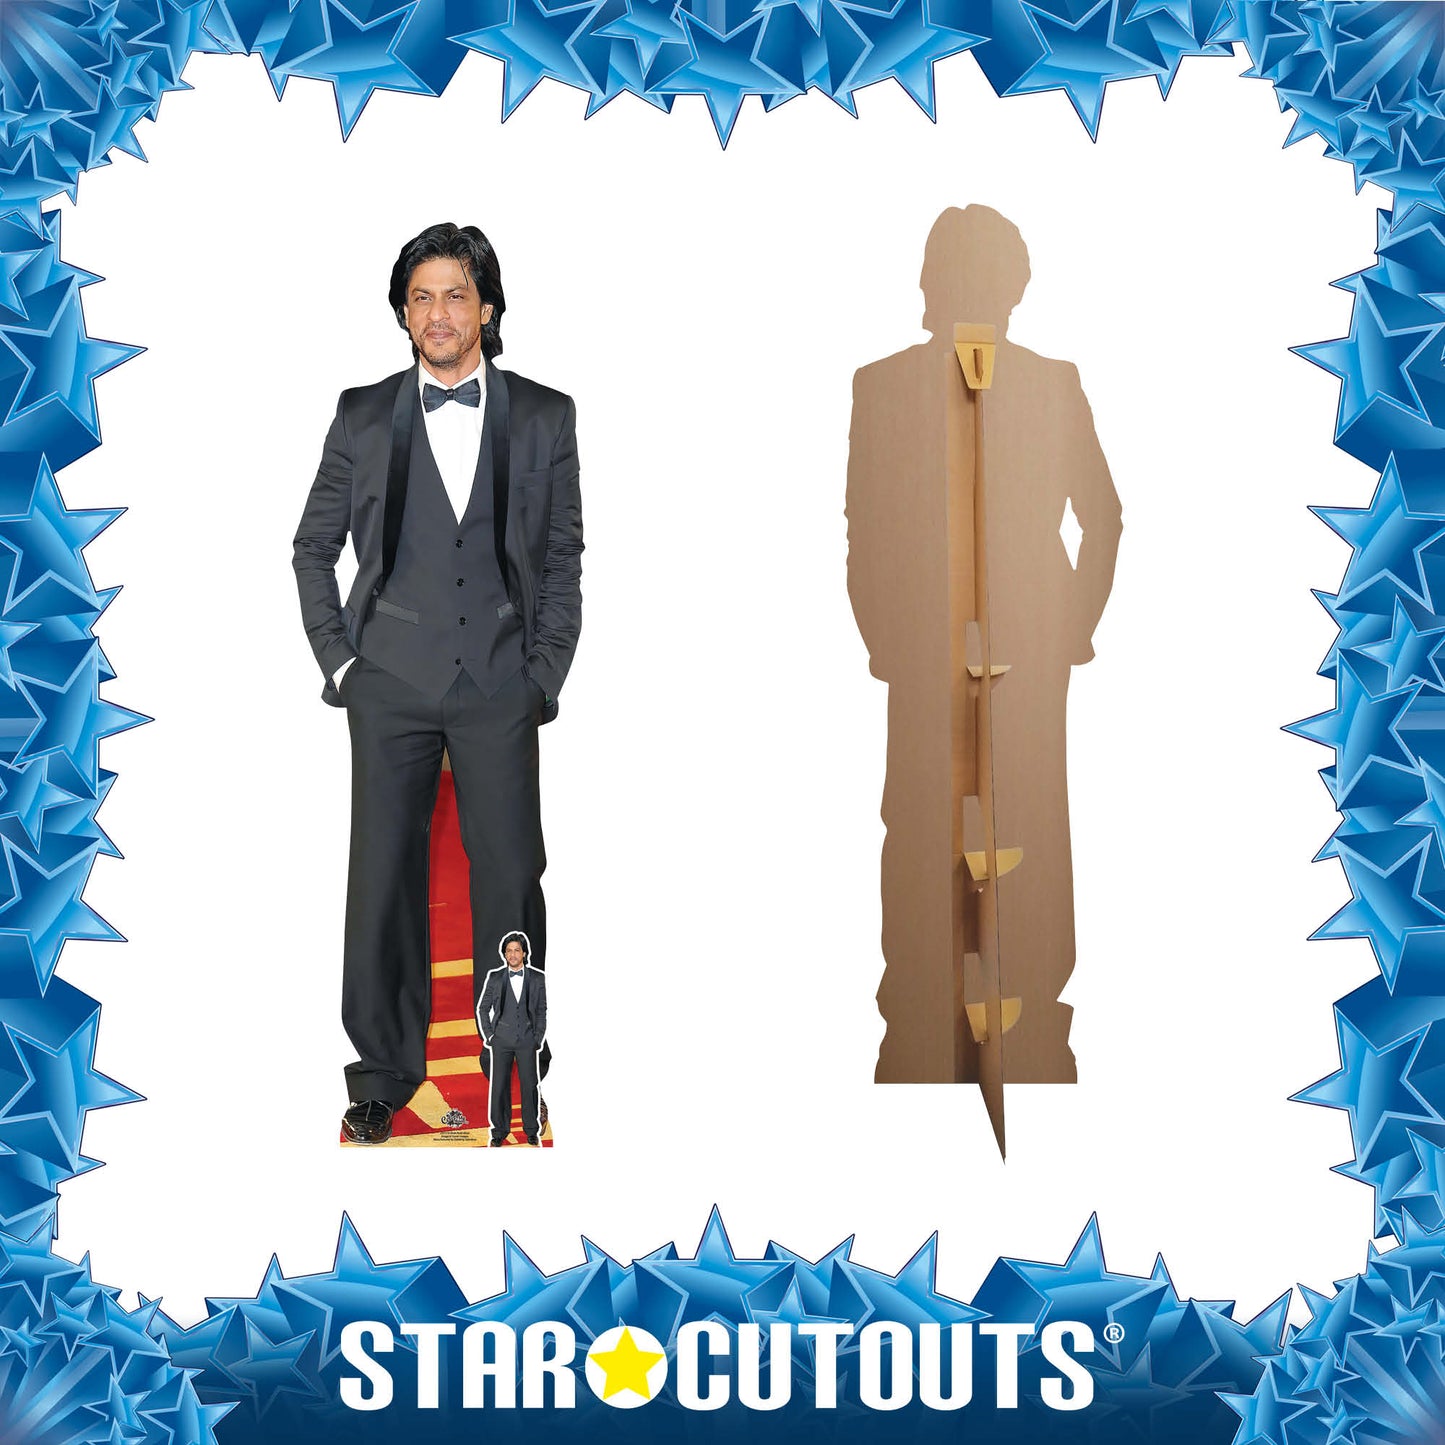 CS1119 Shah Rukh Khan Longhair Height 171cm Cardboard Cutout